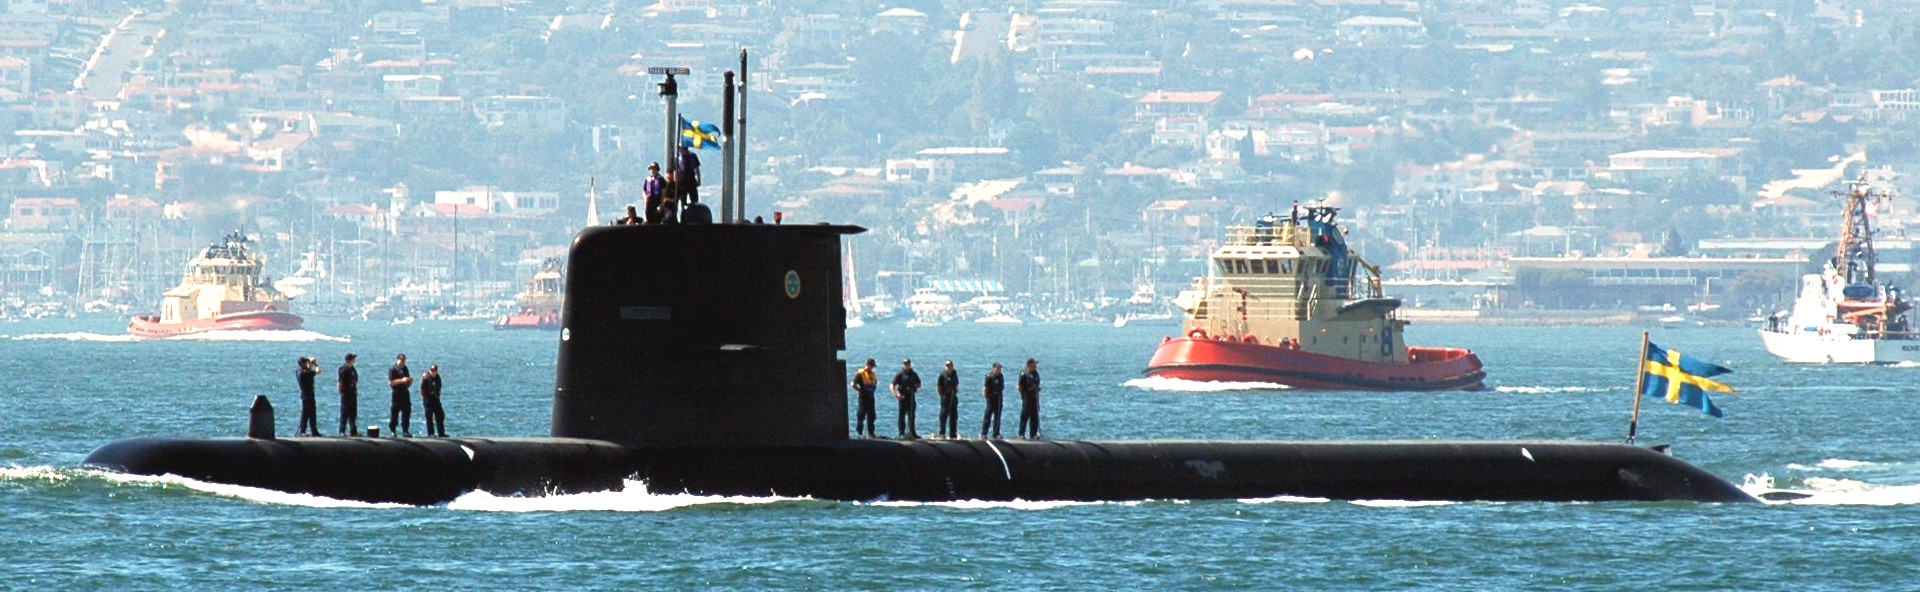 hswms hms gotland gtd class submarine ssk swedish navy svenska marinen försvarsmakten kockums 19